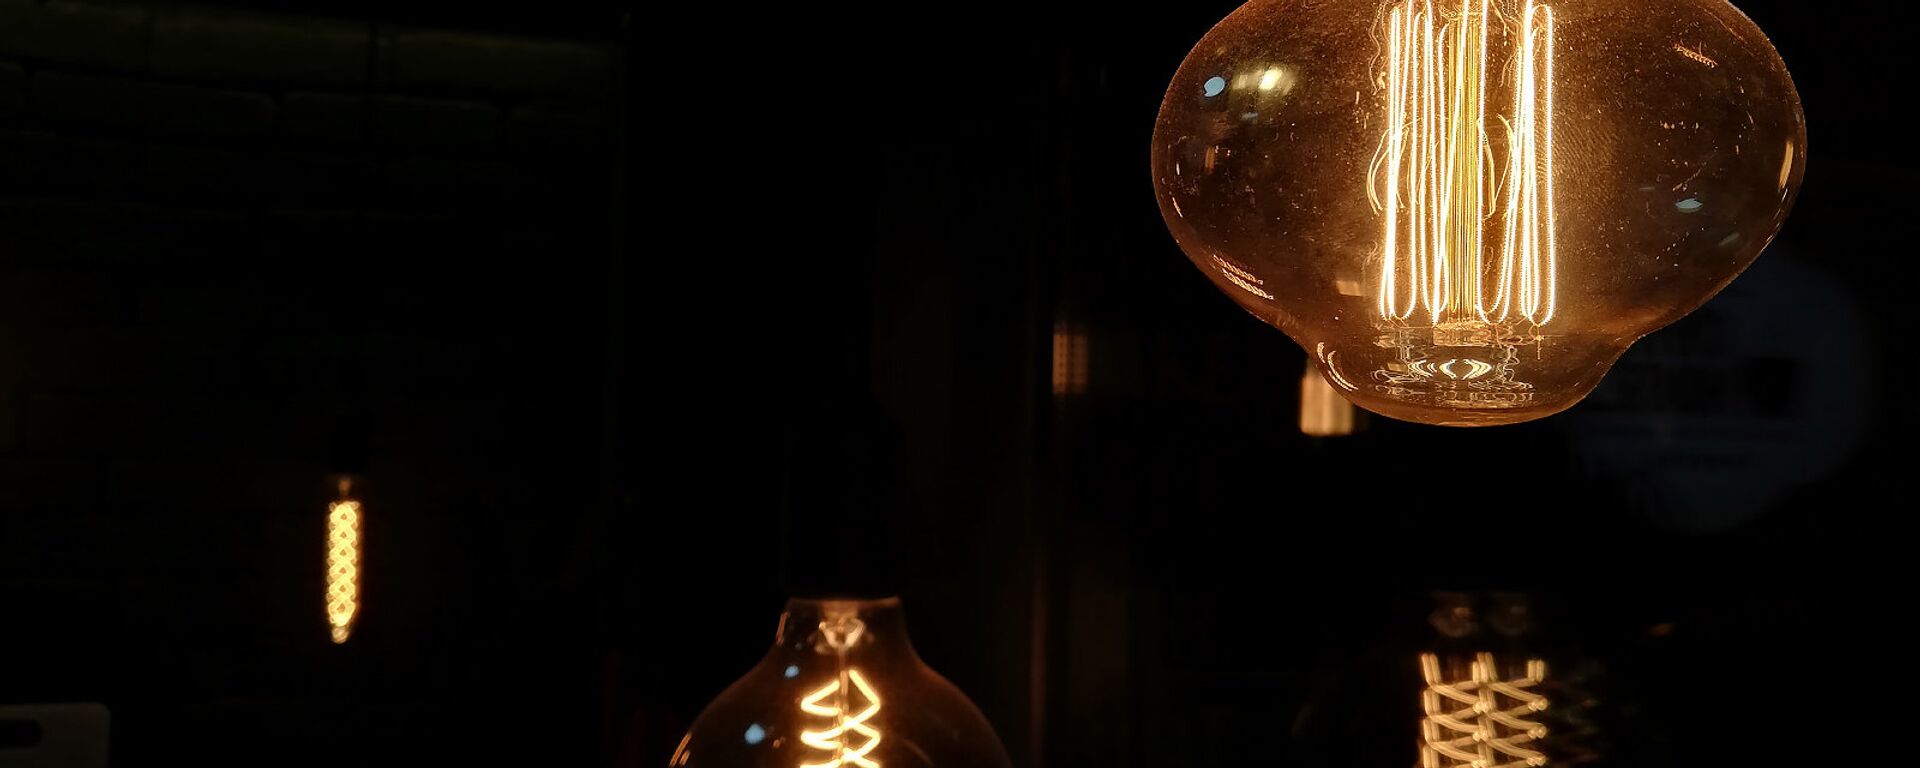 Лампочка накаливания - Sputnik Արմենիա, 1920, 19.04.2021